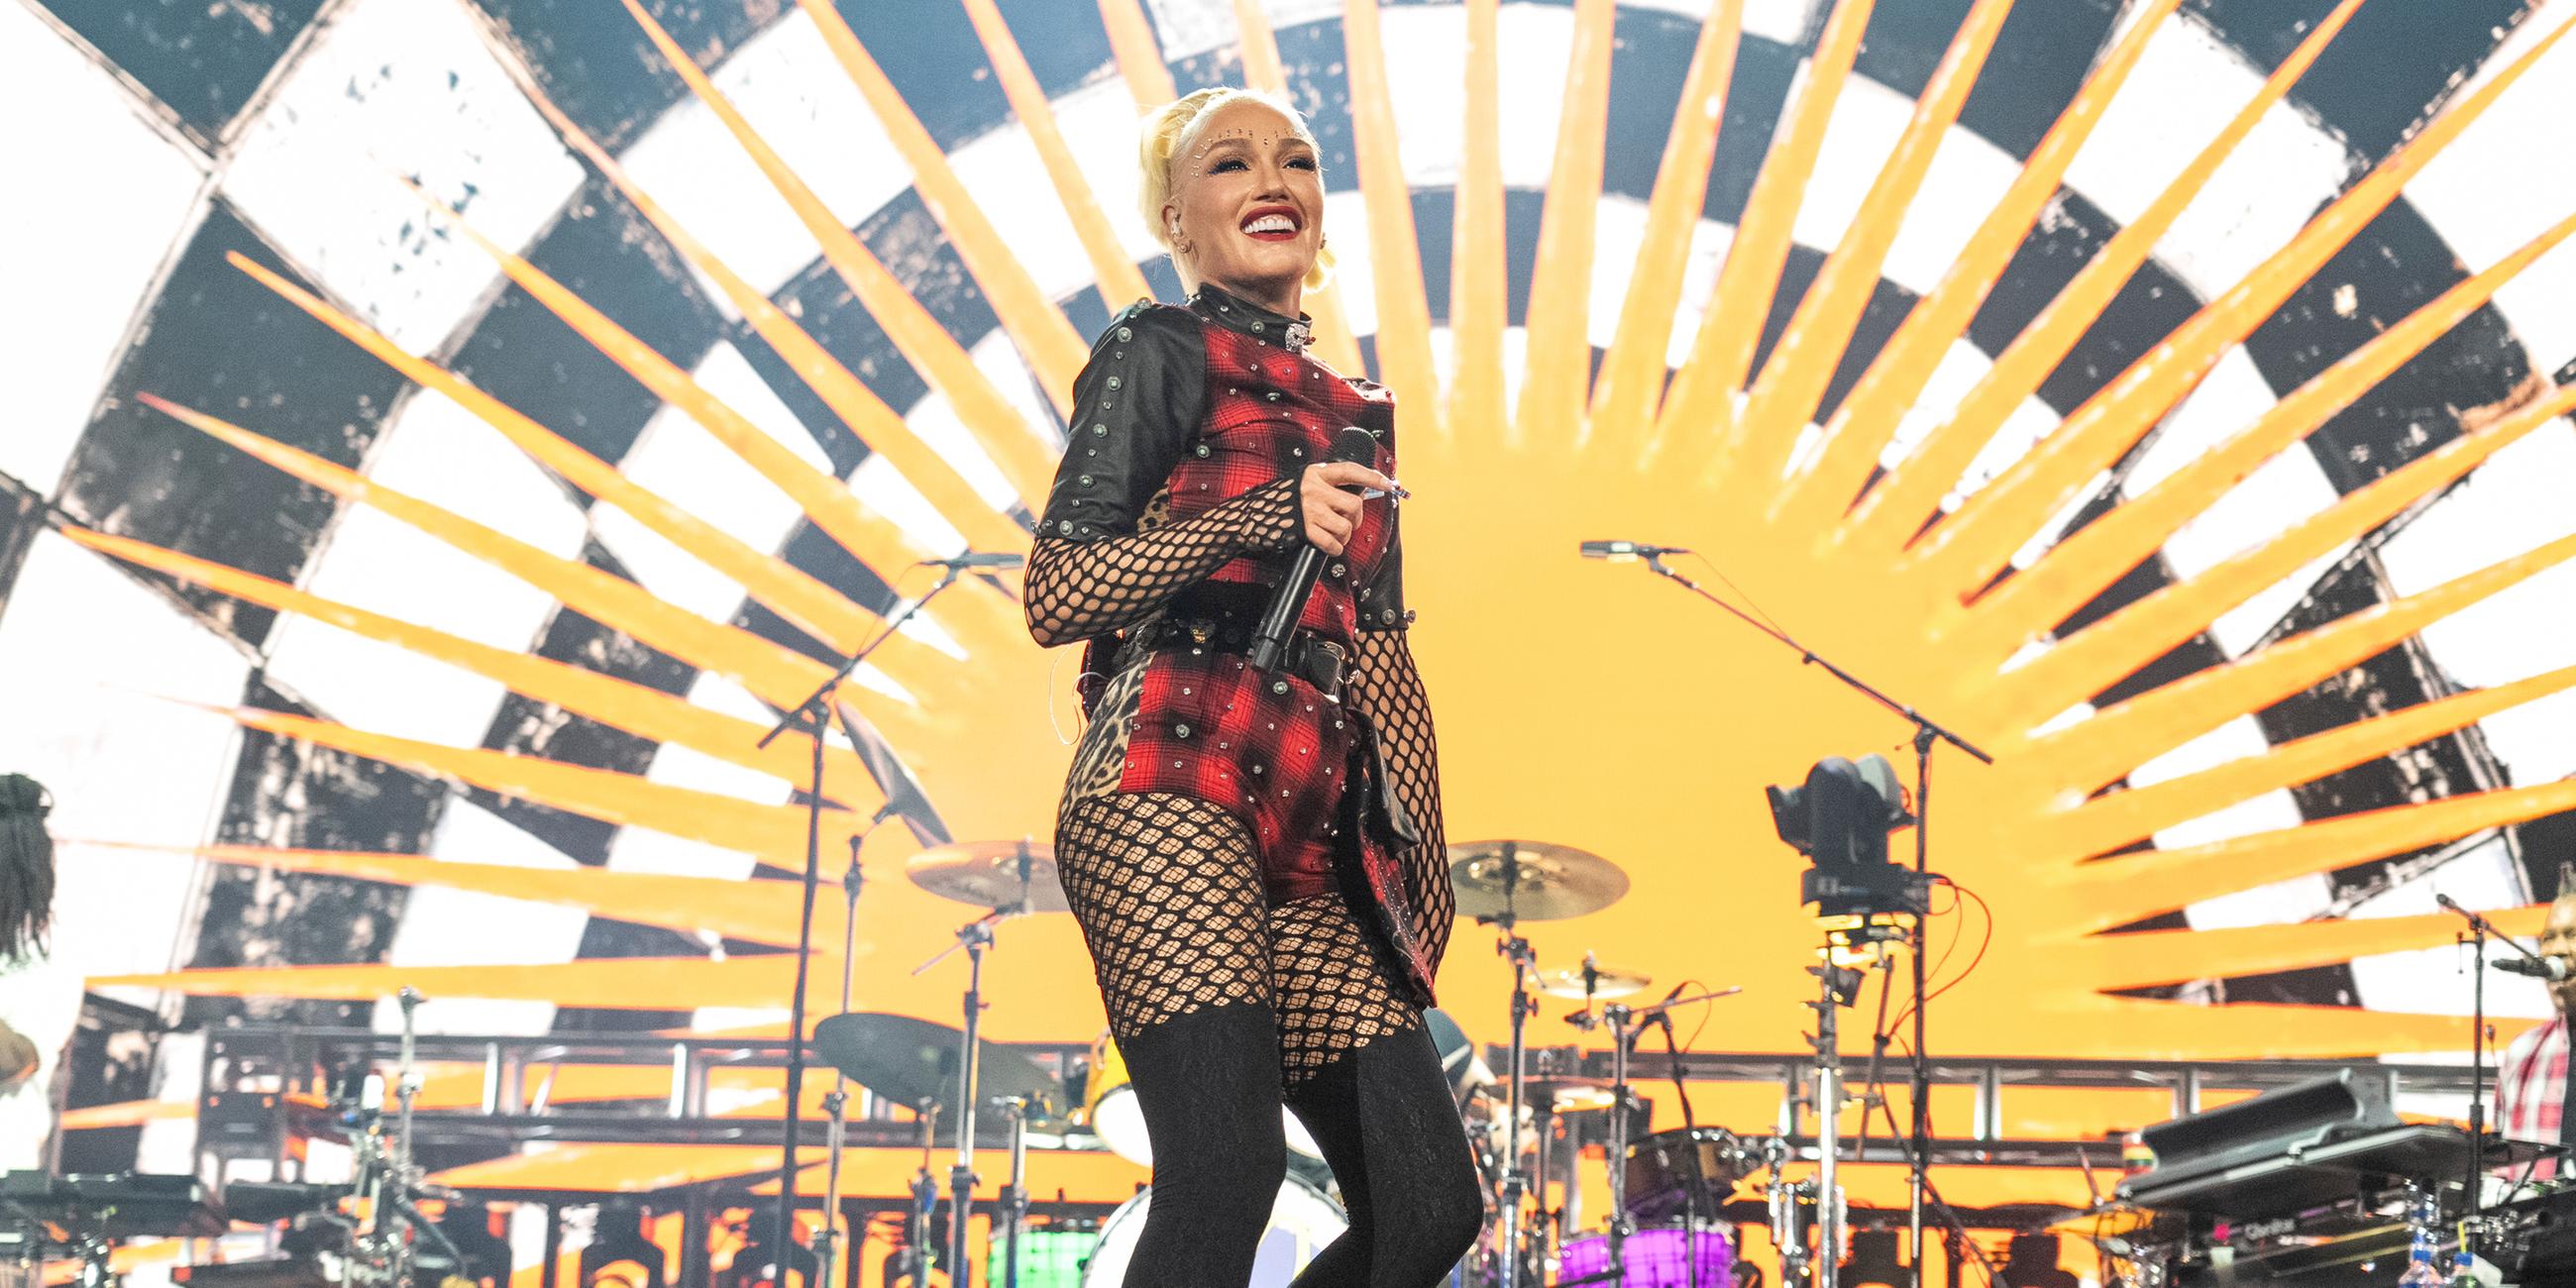 US-Sängerin Gwen Stefani von "No Doubt" beim Auftritt